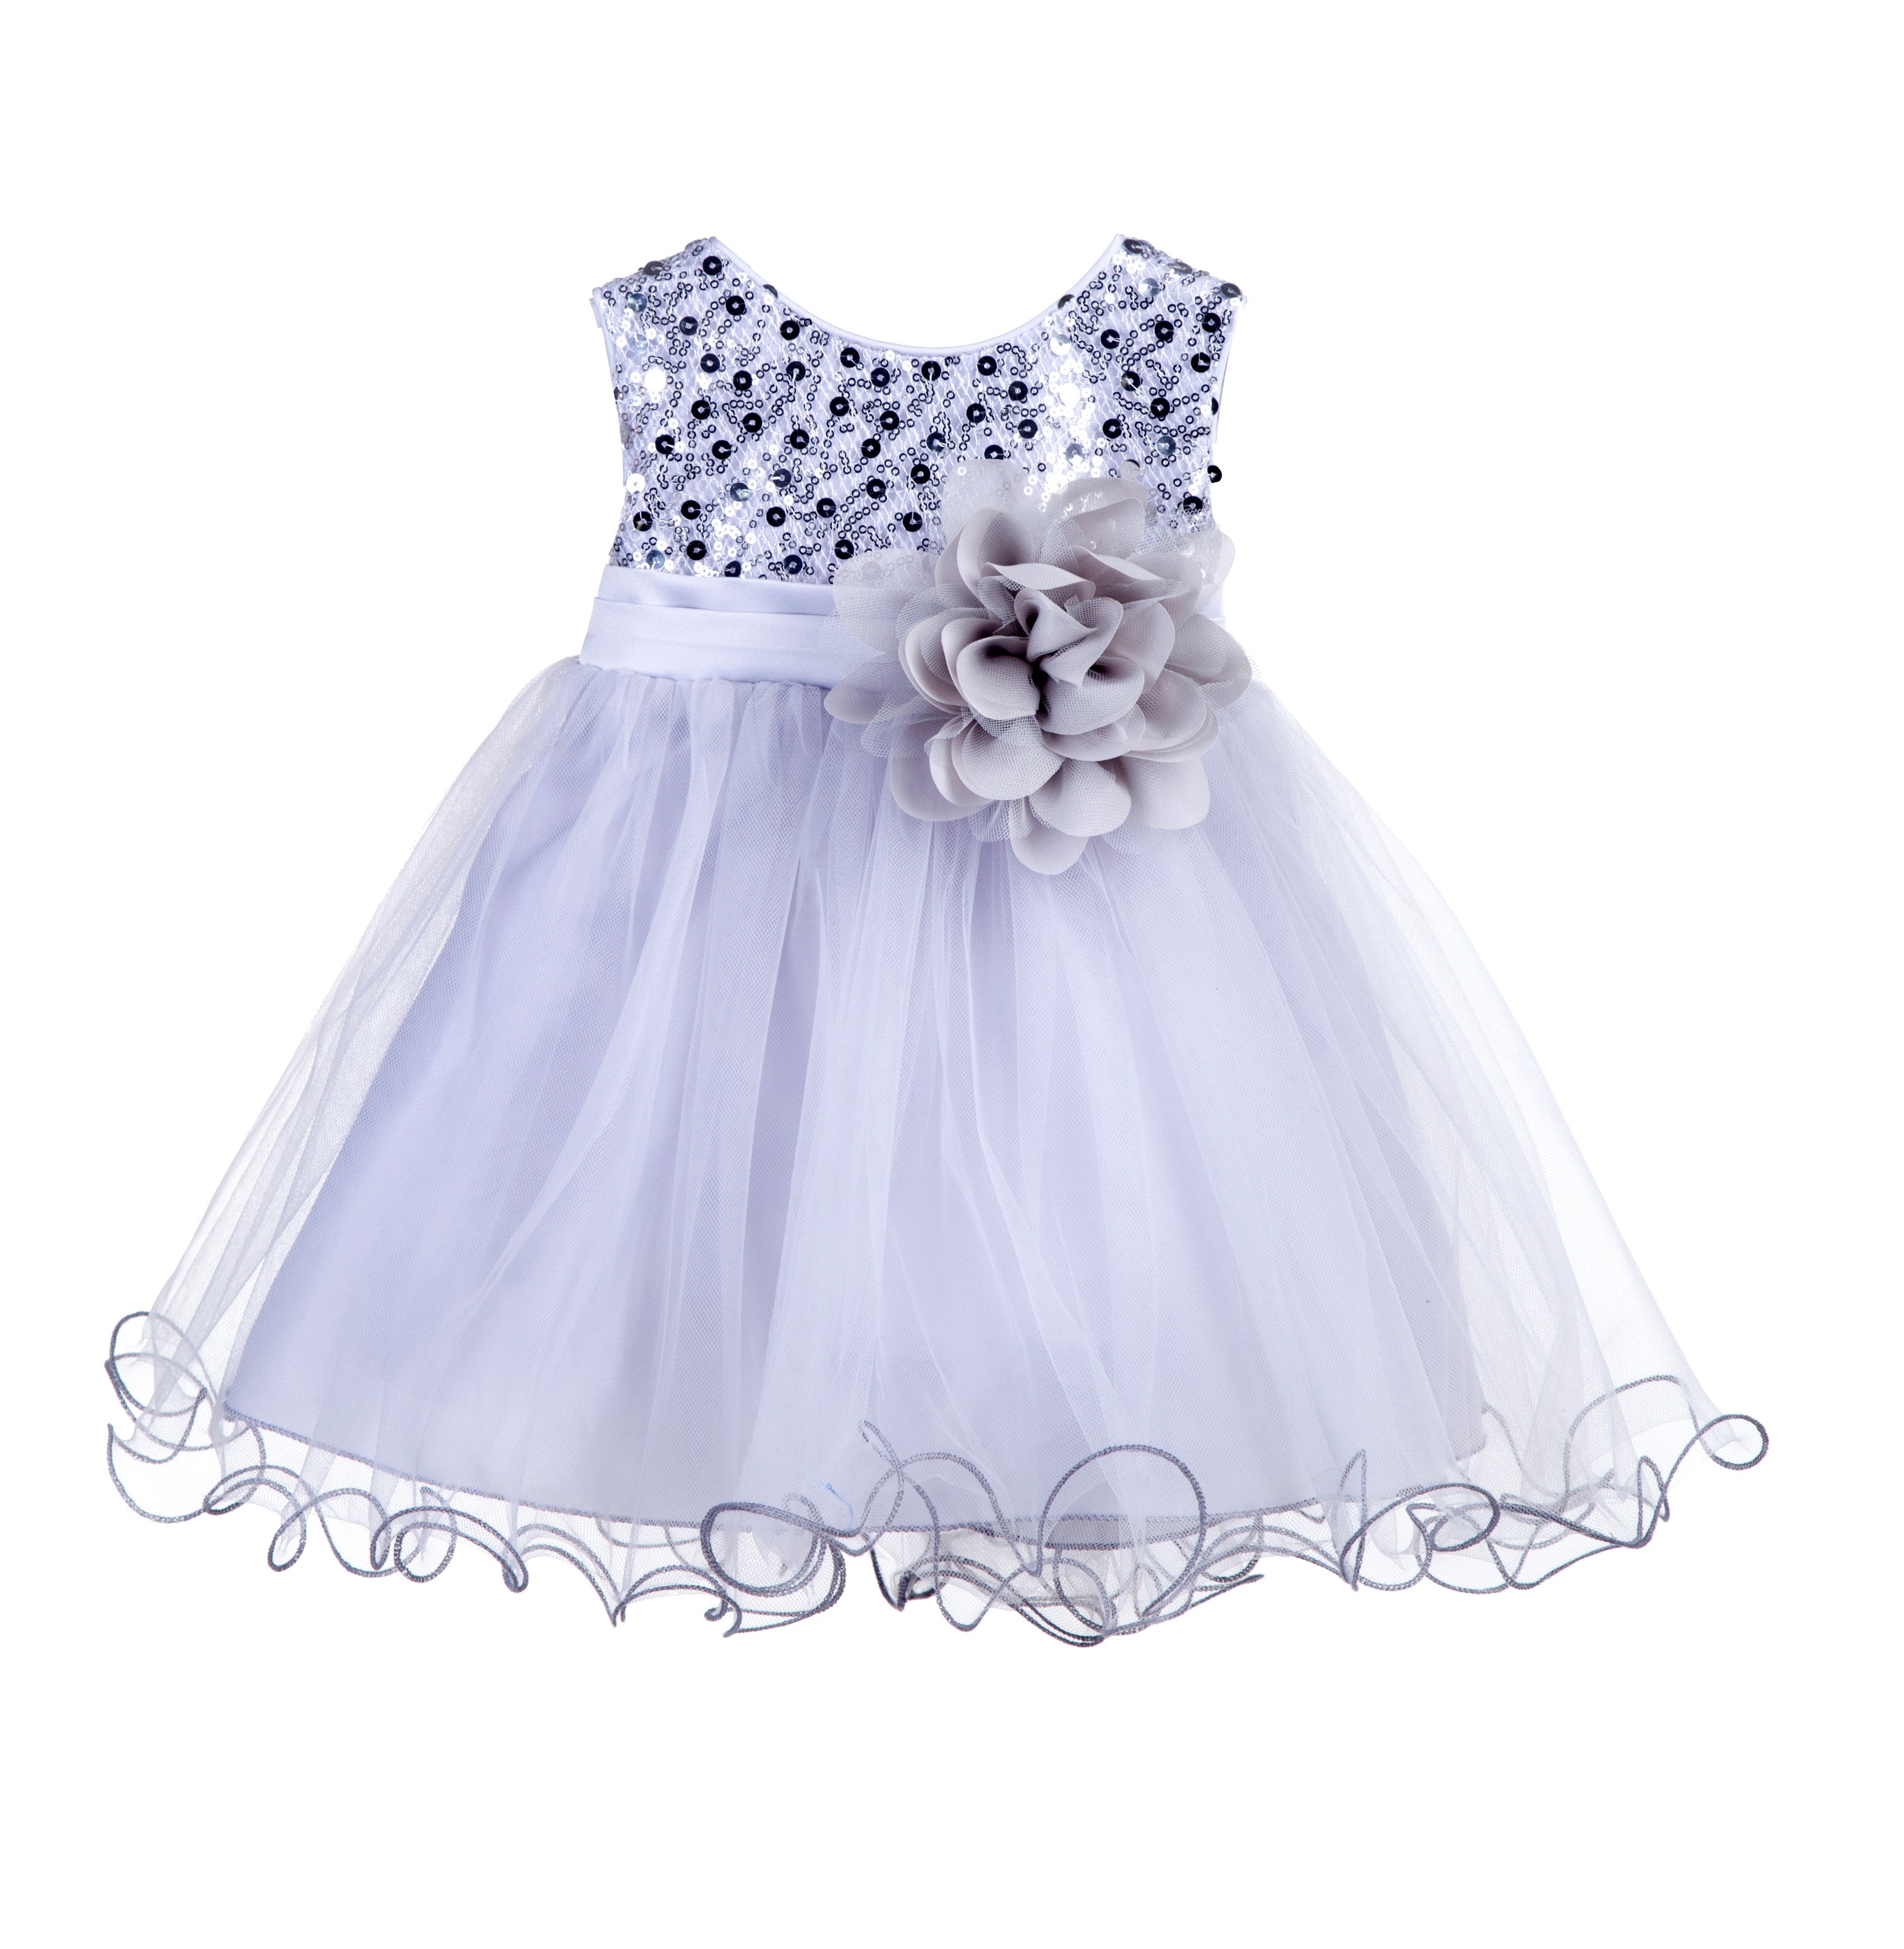 Silver Glitter Sequin Tulle Flower Girl Dress Formal Princess B-011NF